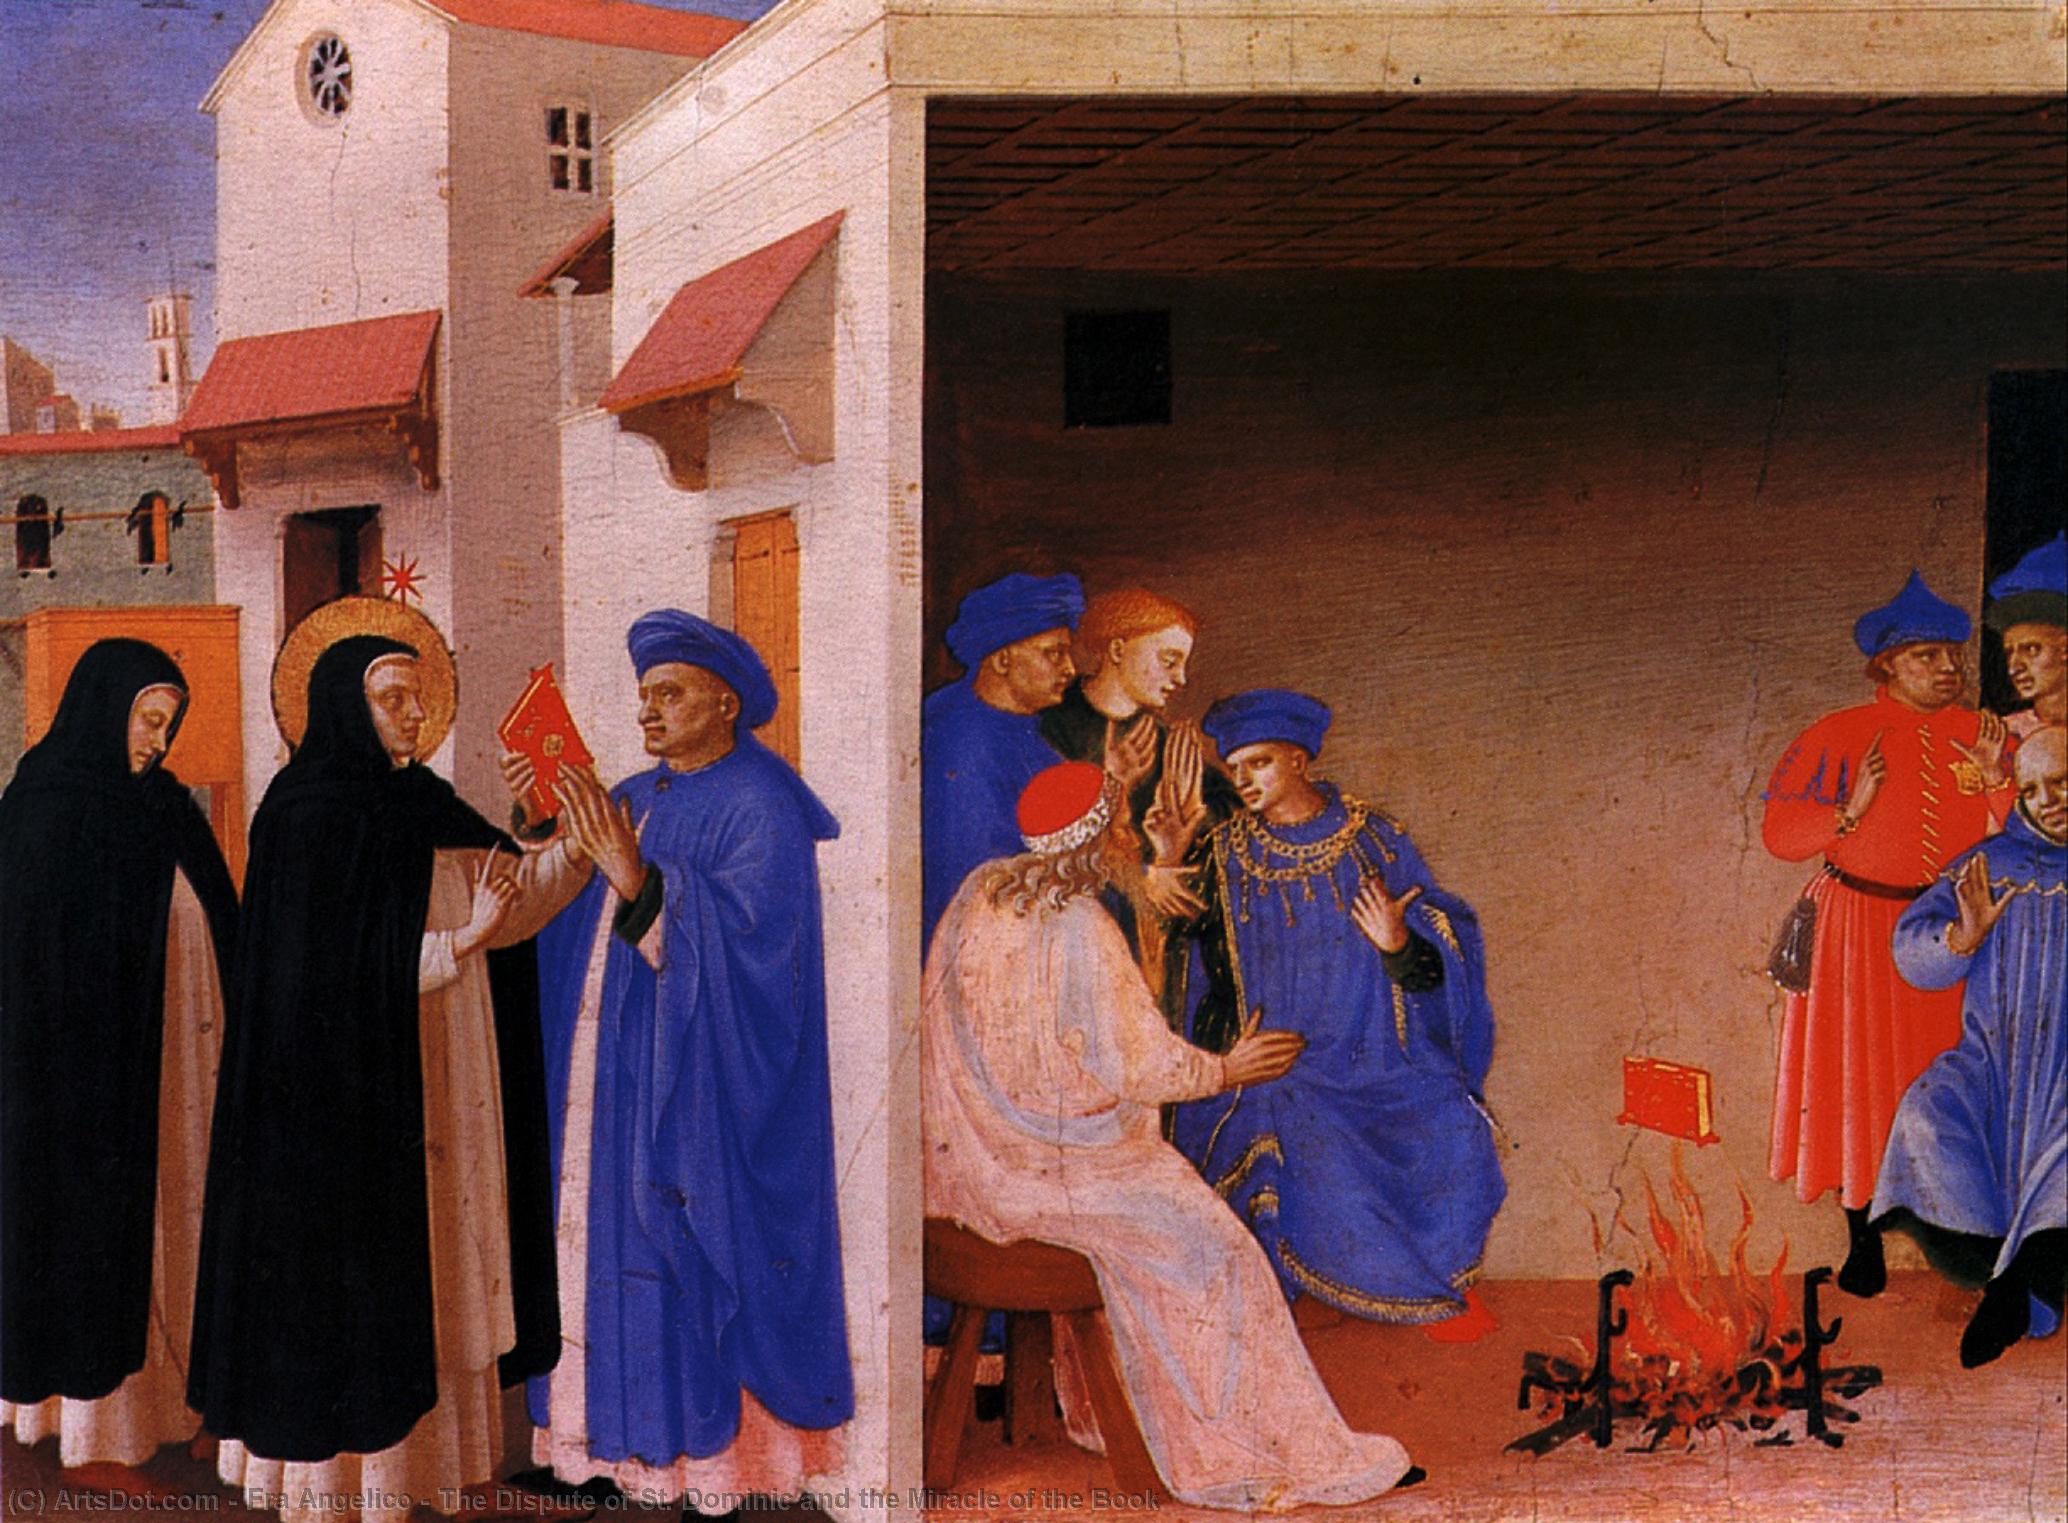 WikiOO.org - Enciklopedija likovnih umjetnosti - Slikarstvo, umjetnička djela Fra Angelico - The Dispute of St. Dominic and the Miracle of the Book